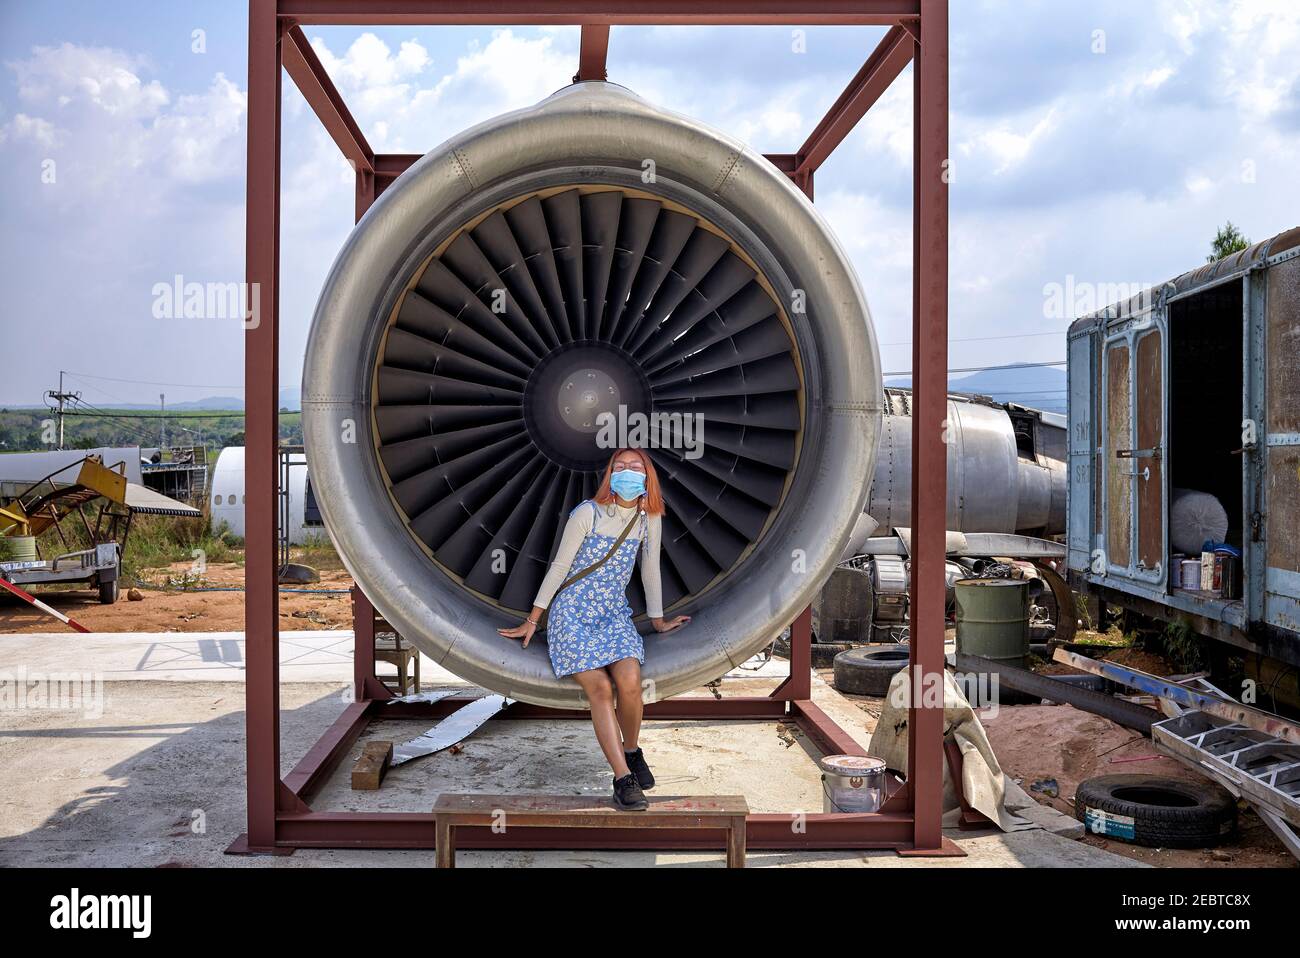 Mädchen saß in einem Jet Turbine Motor Bereitstellung menschliche Größe Vergleich Stockfoto